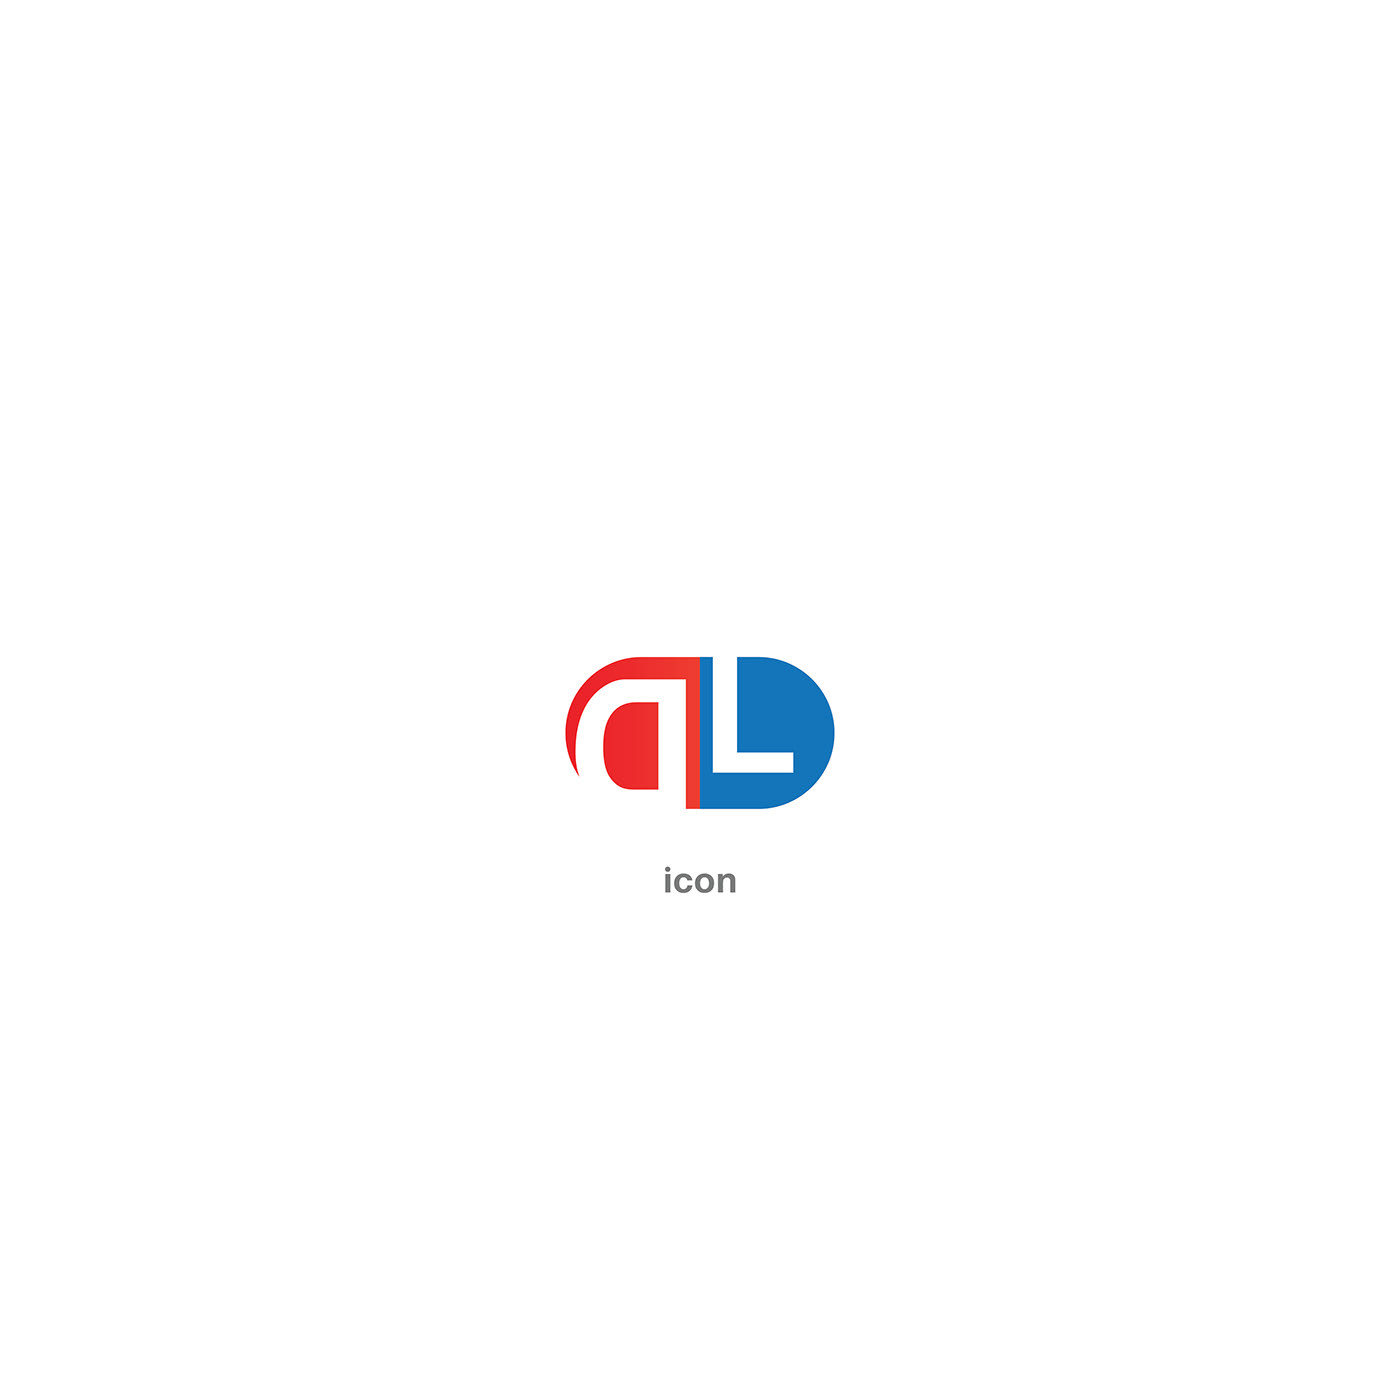 brand identity identity logo Logo Design logos Logotype visual